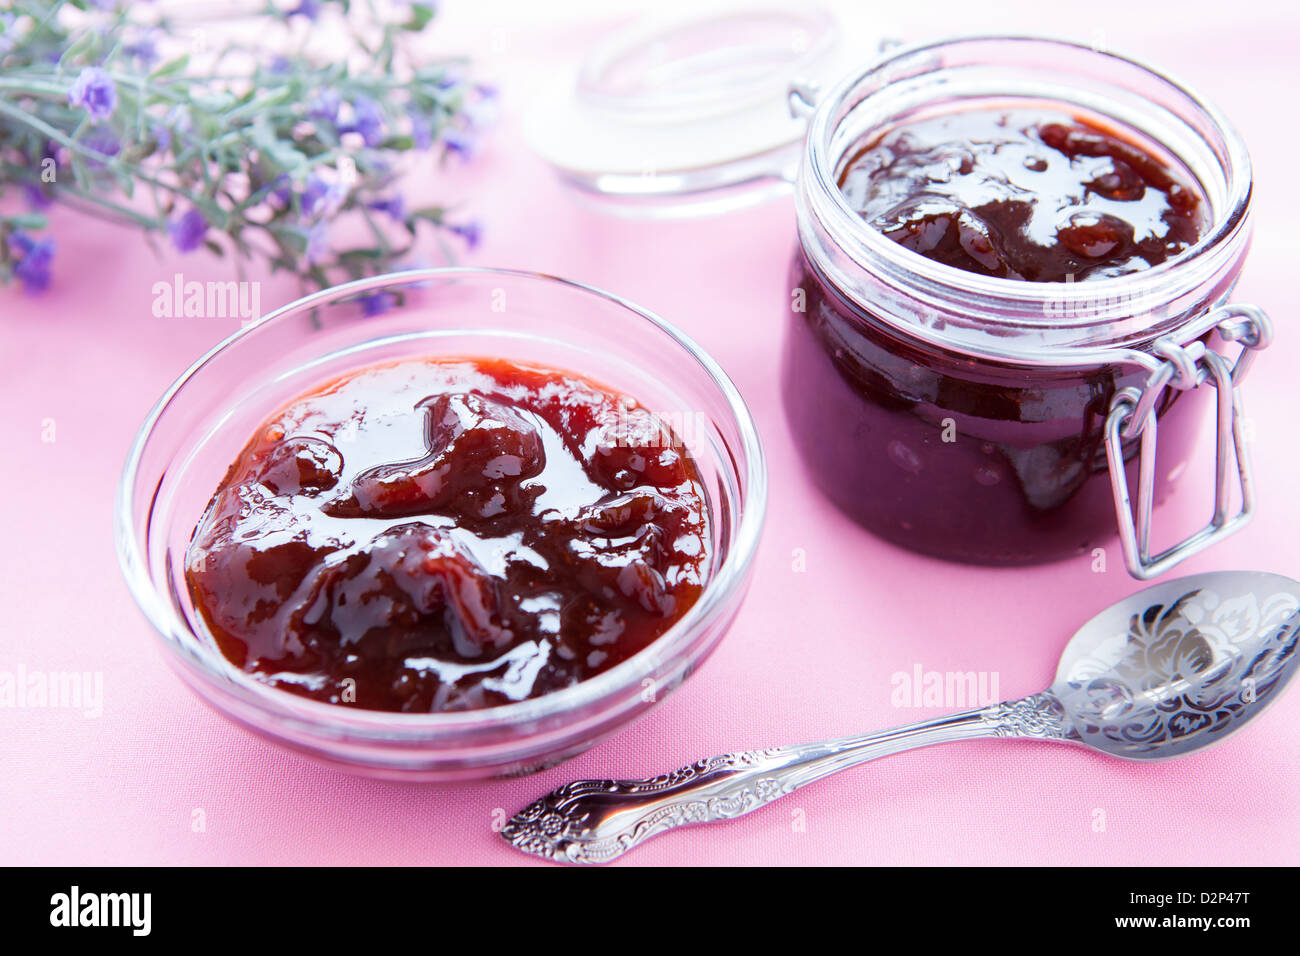 sweet plum jam in a transparent bowl, closeup Stock Photo